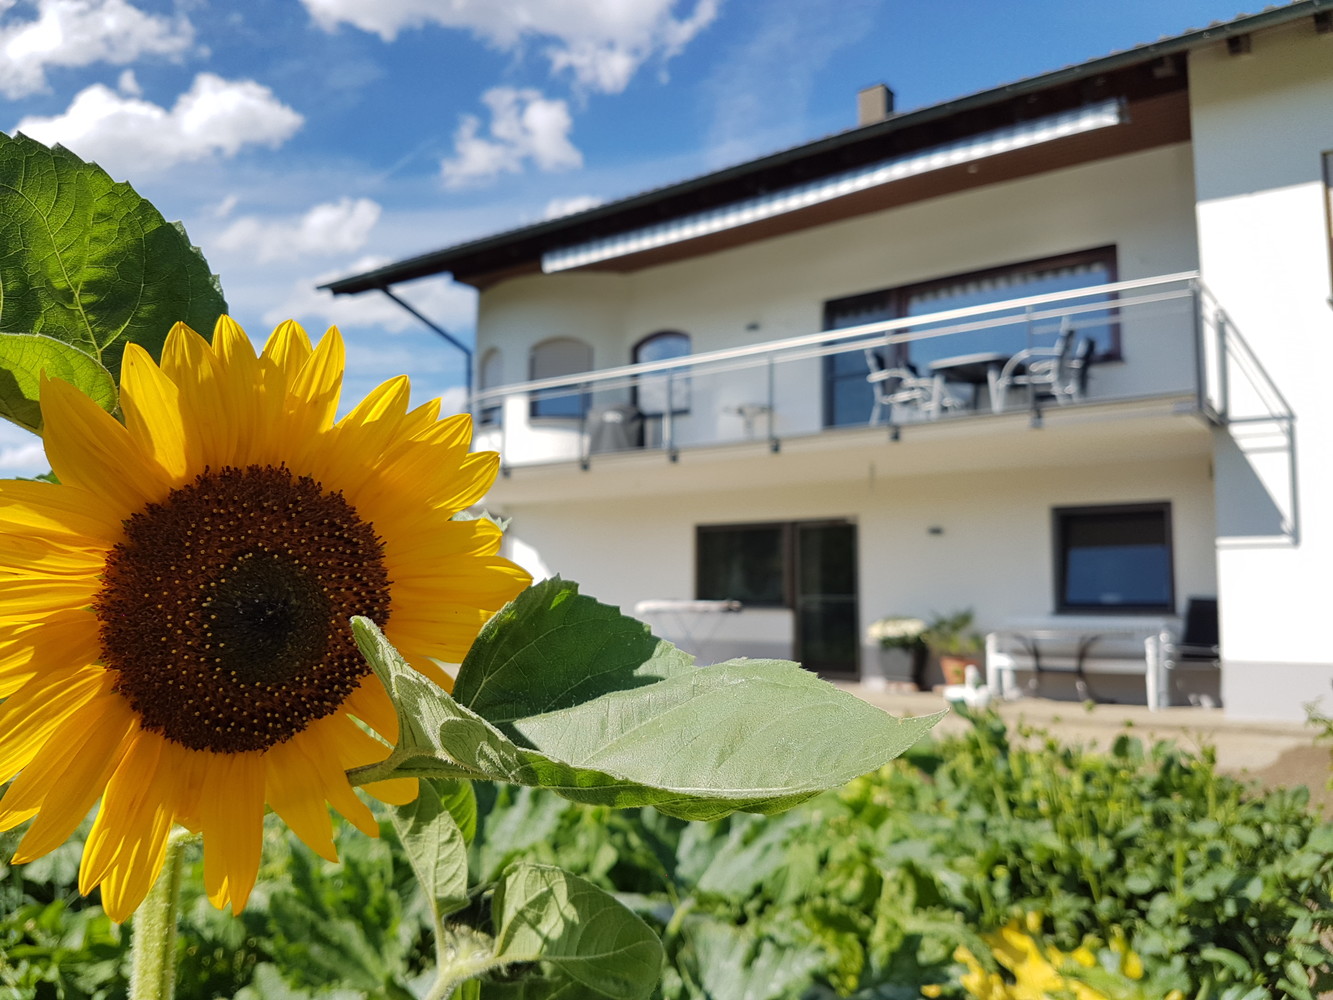 Haus mit Sonnenblume im Vordergrund, Fotowettbewerb 2016